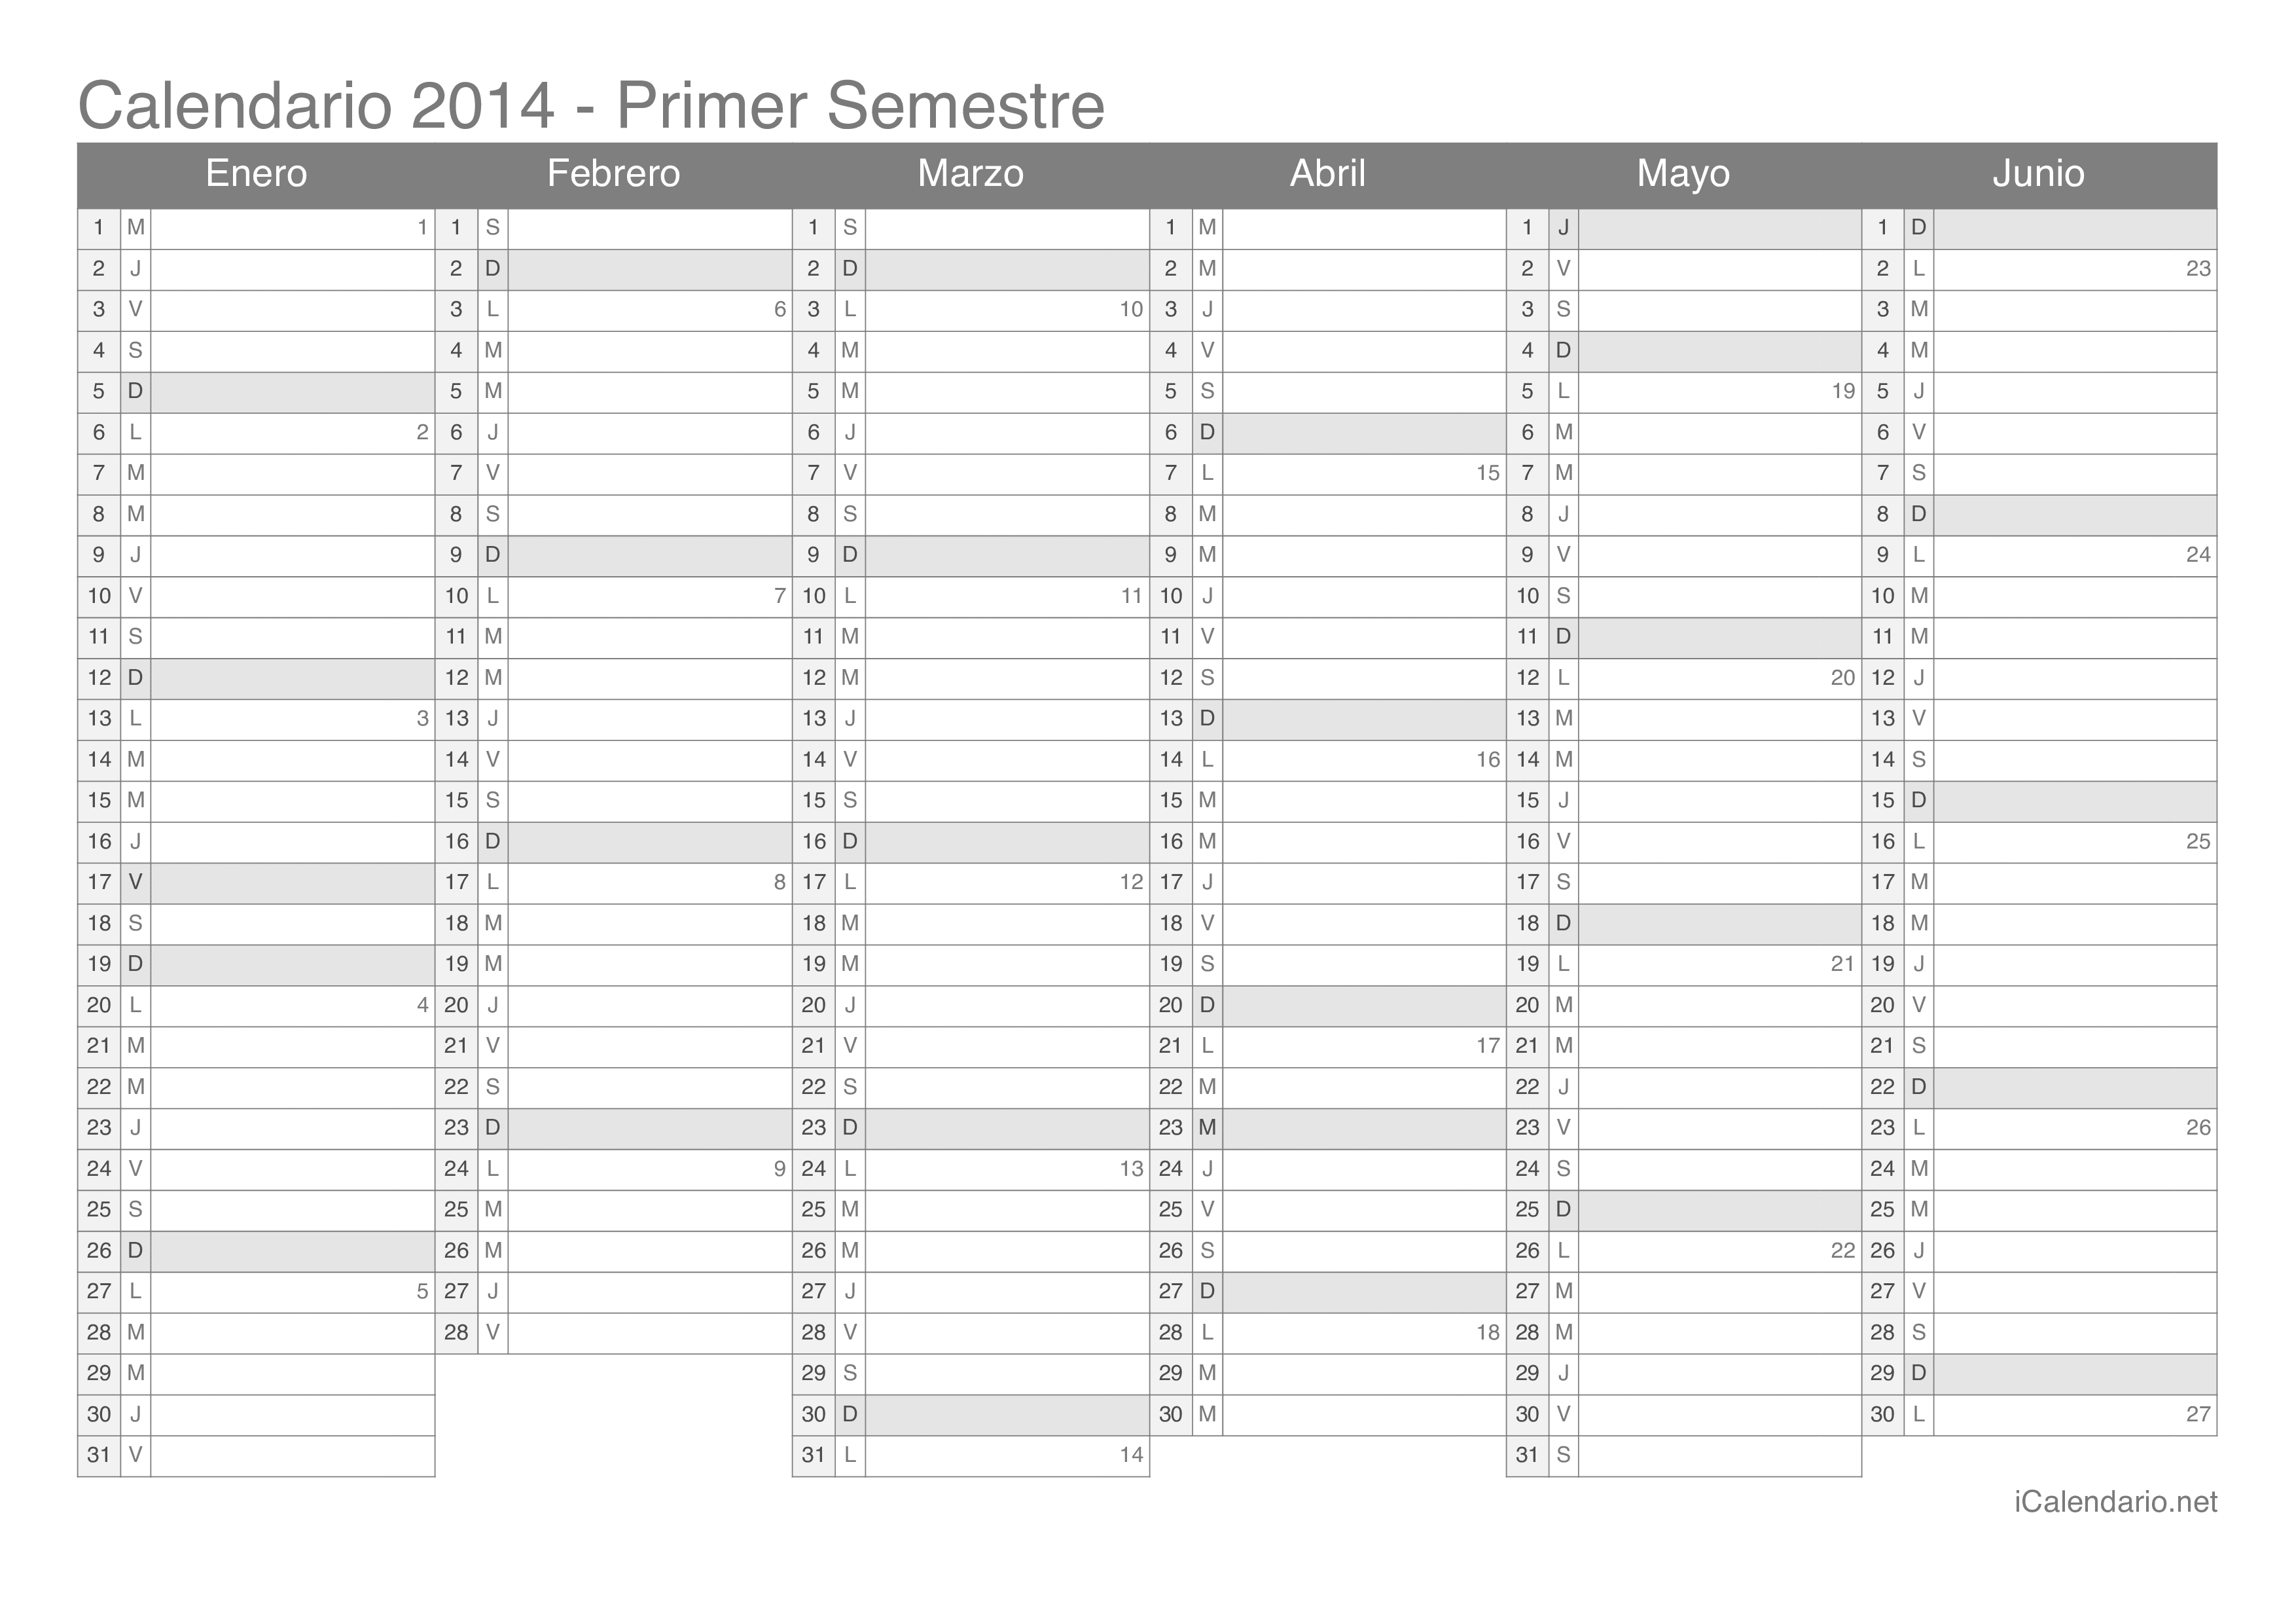 Calendario por semestre com números da semana 2014